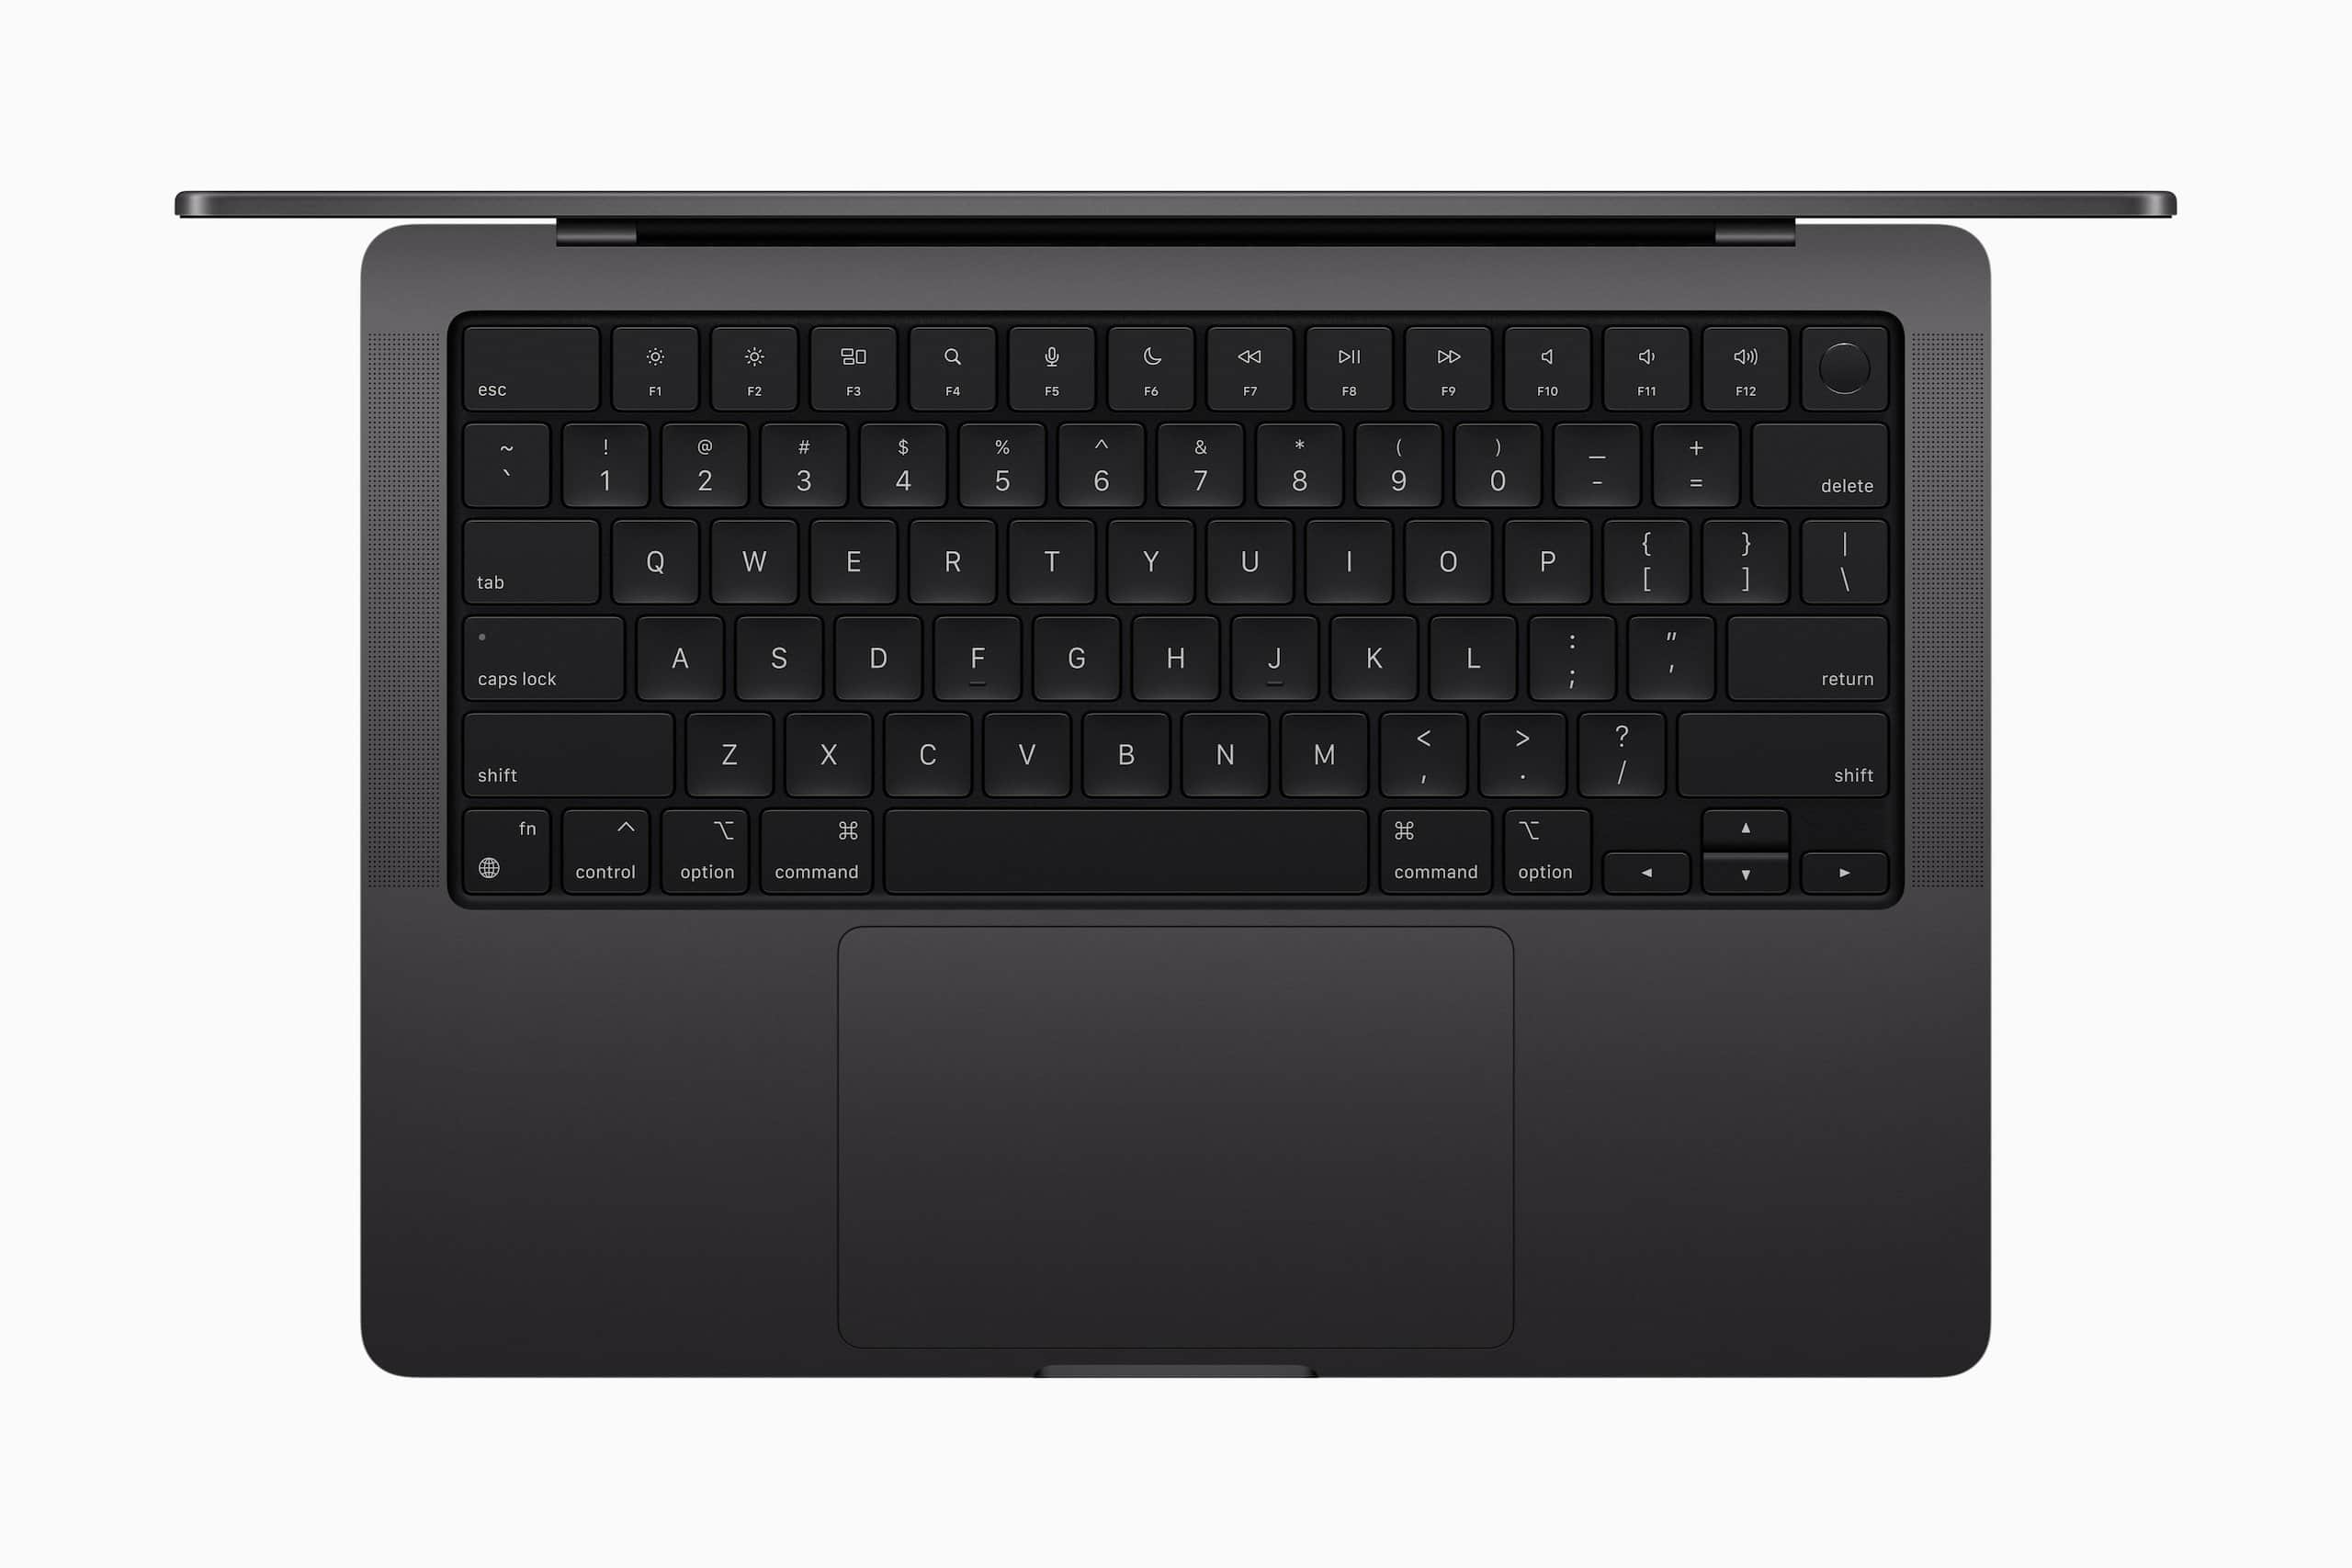 Apple MacBook Pro in Space Black - top view met keyboard